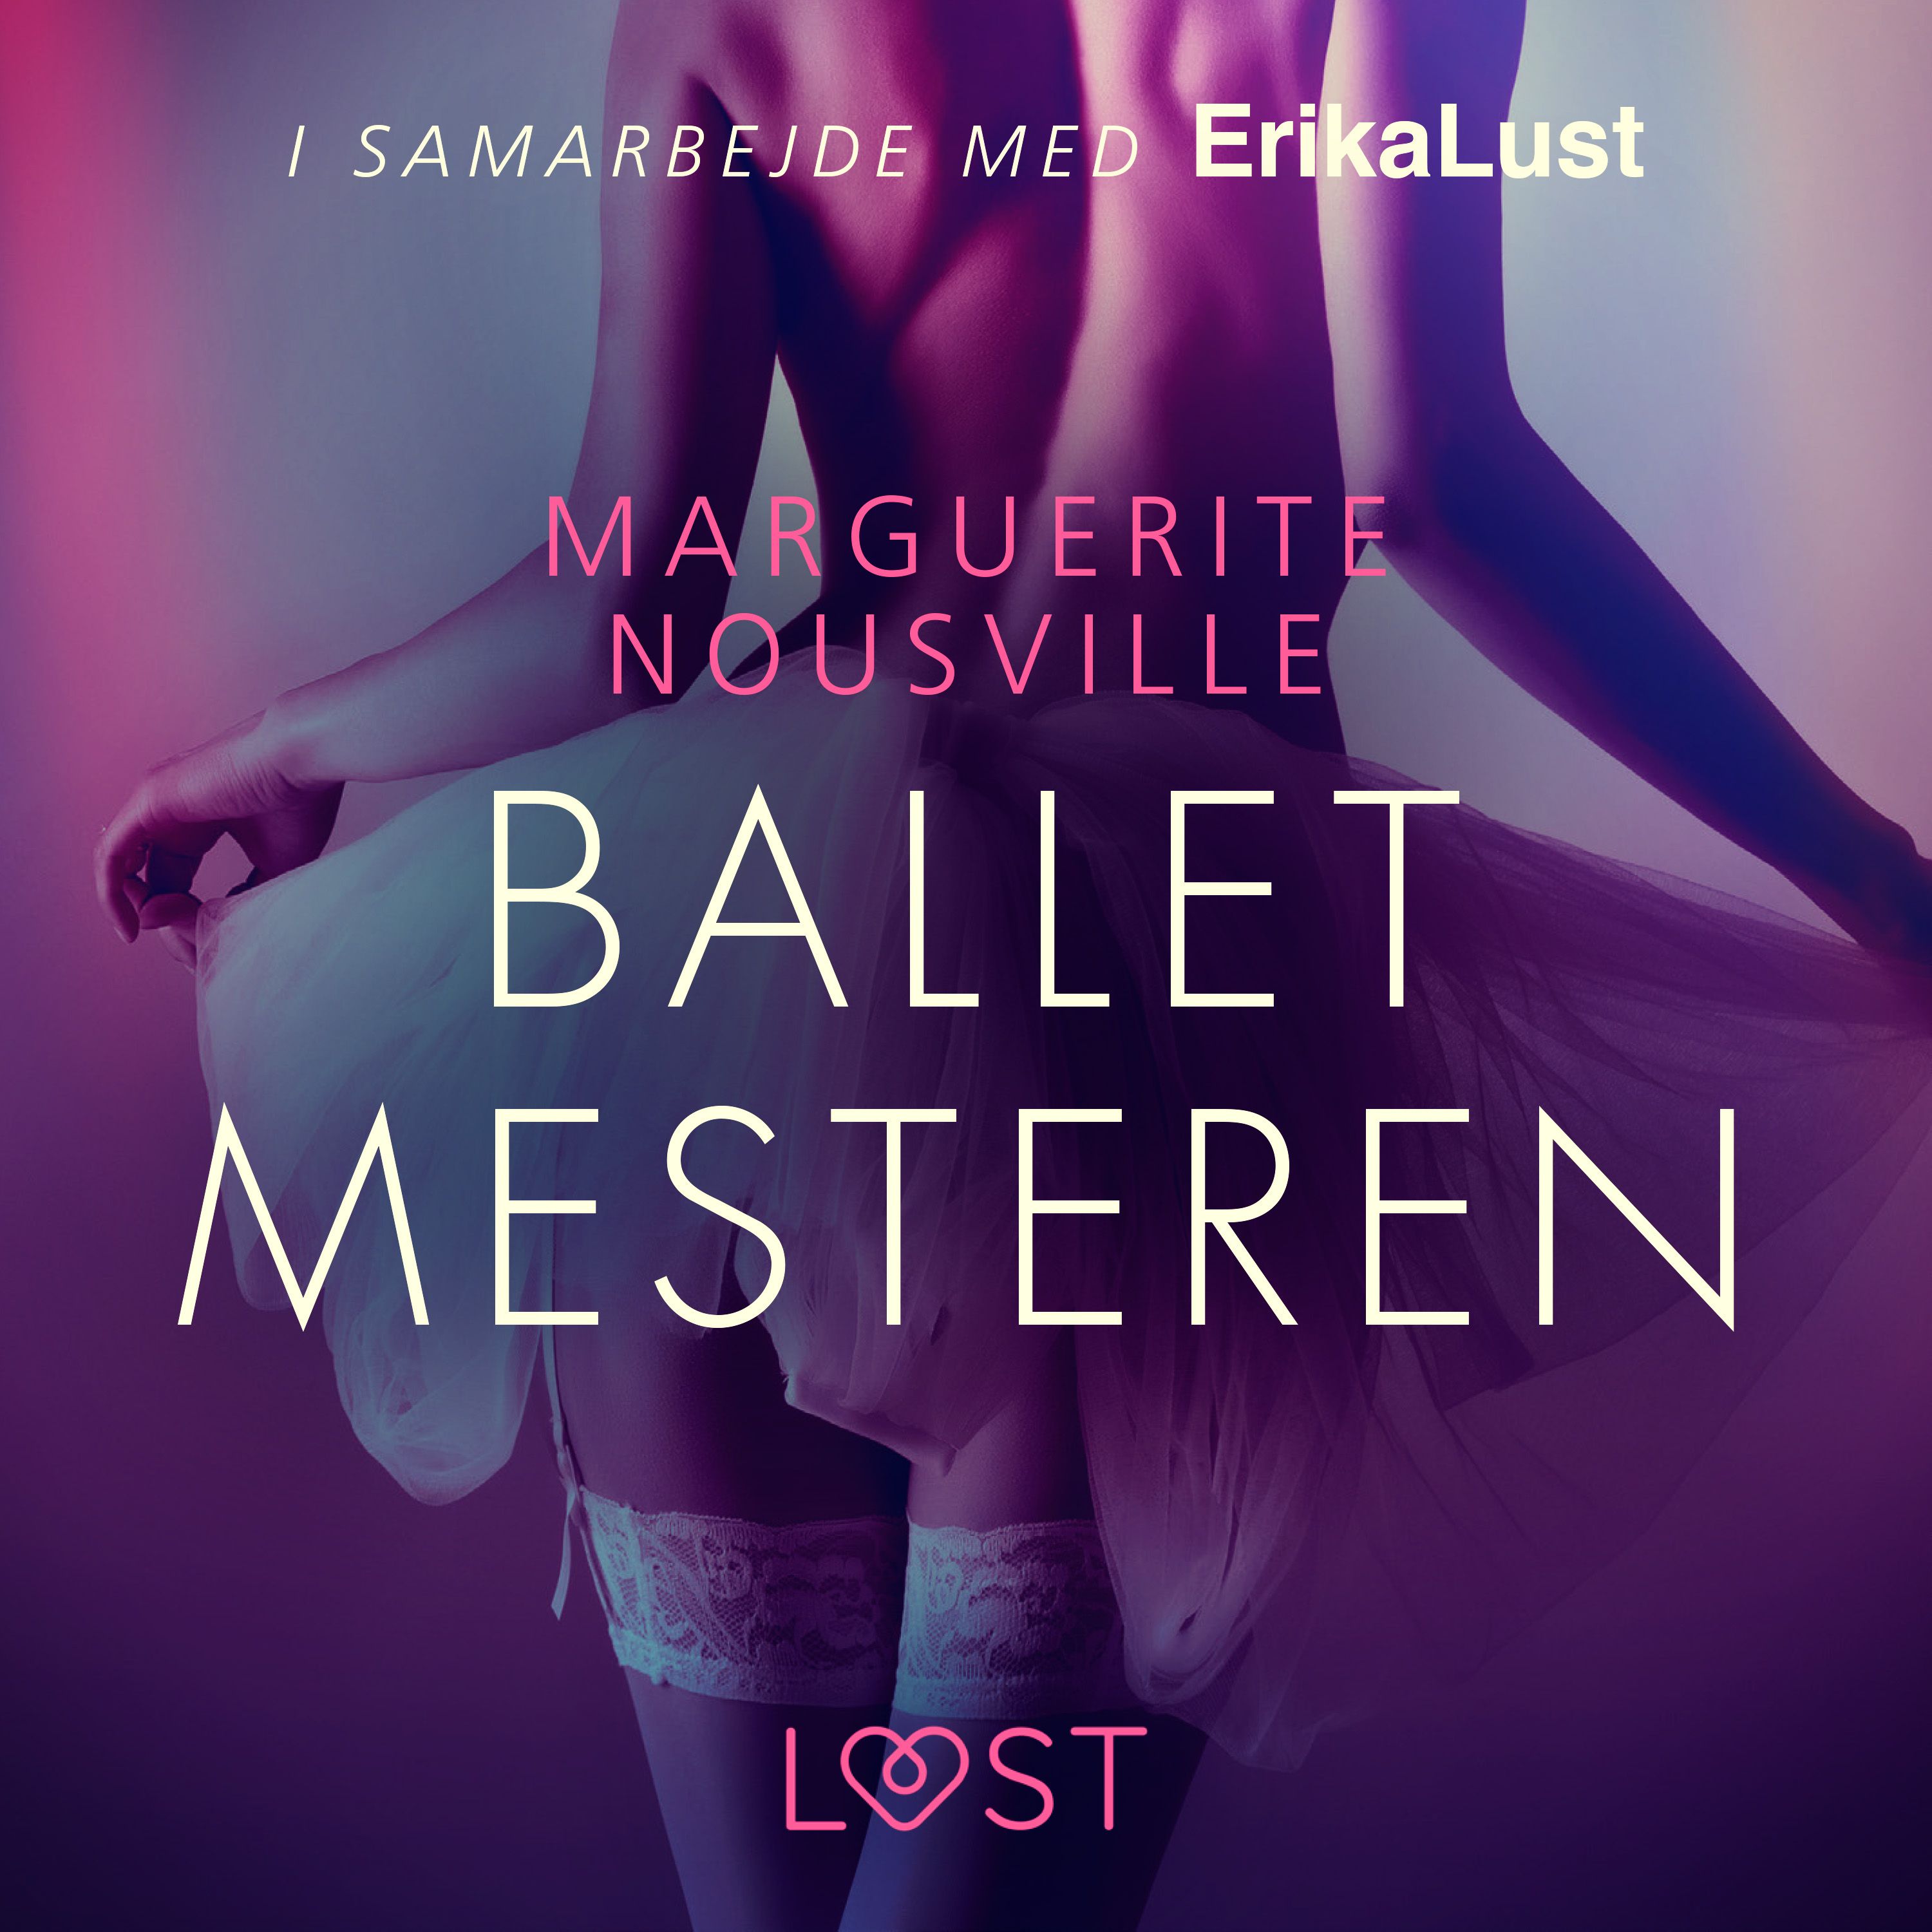 Balletmesteren, ljudbok av Marguerite Nousville